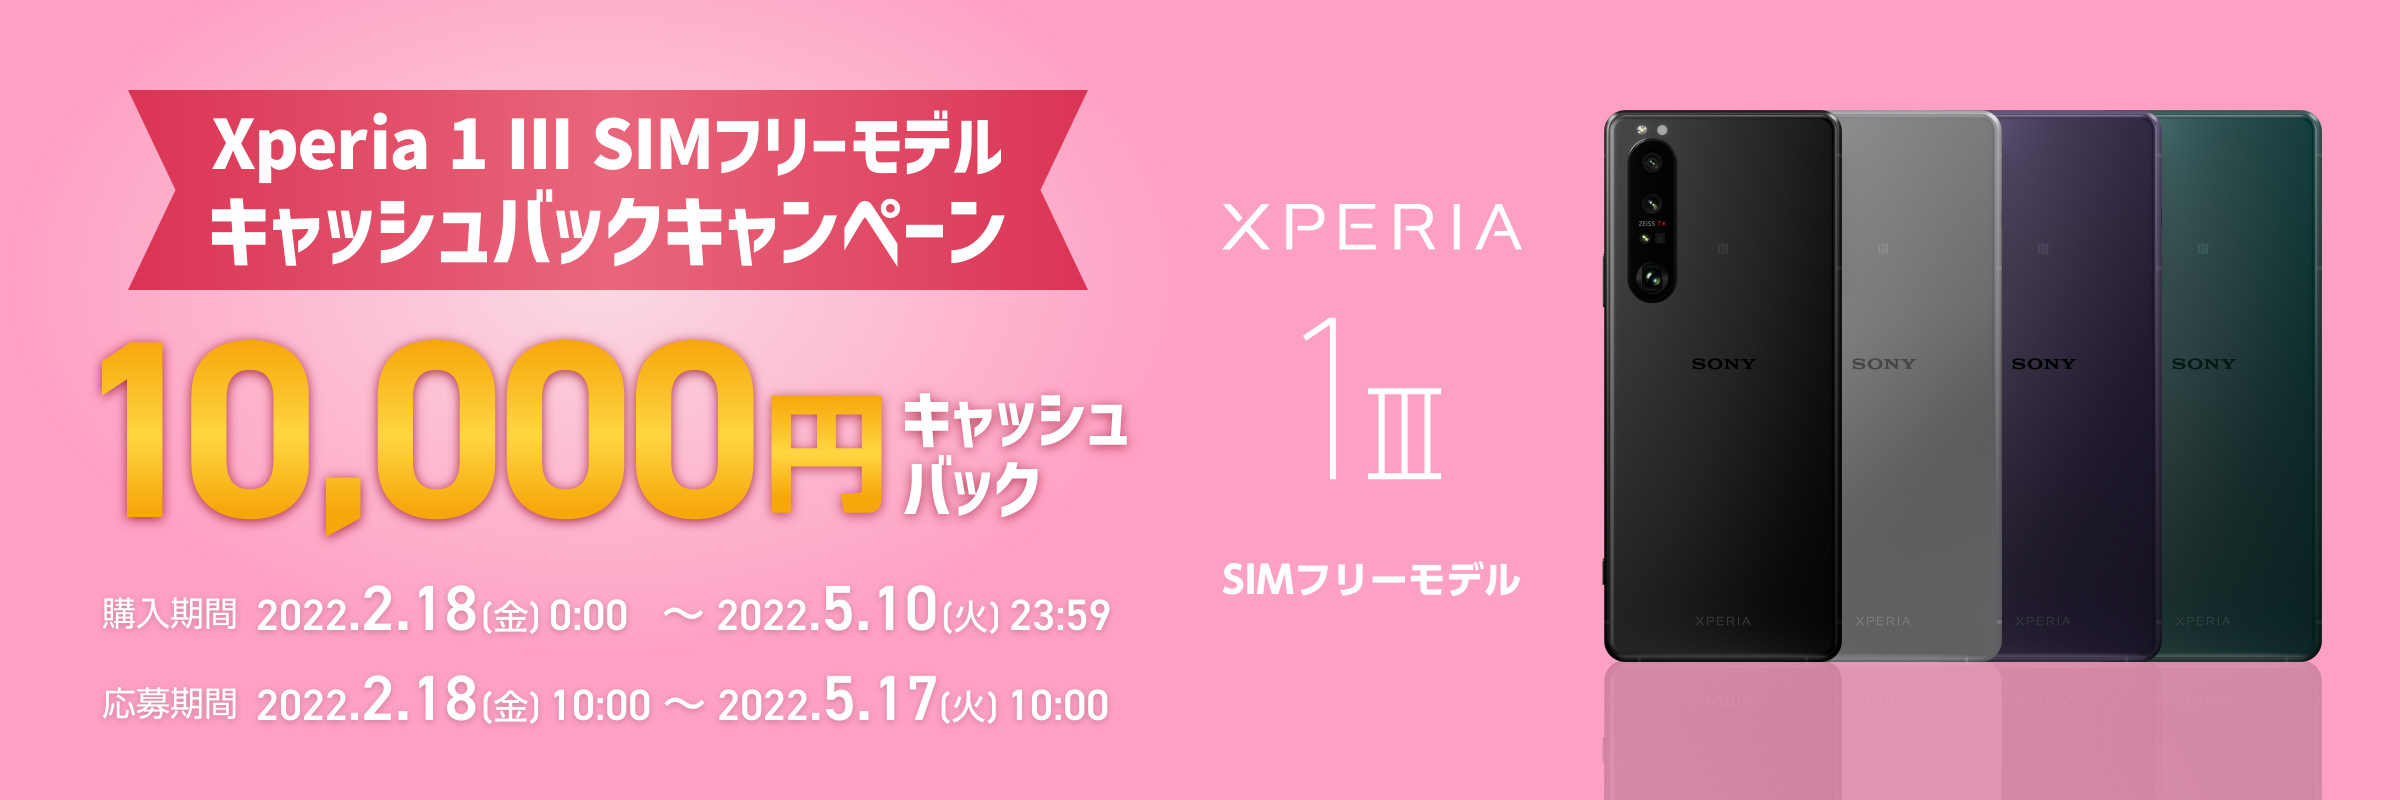 Xperia 1 III SIMフリーモデルキャッシュバックキャンペーン 10,000円キャッシュバック 購入期間：2022.2.18(金)0:00 ～ 2022.5.10(火)23:59 応募期間：2022.2.18(金)10:00 ～ 2022.5.17(火)10:00